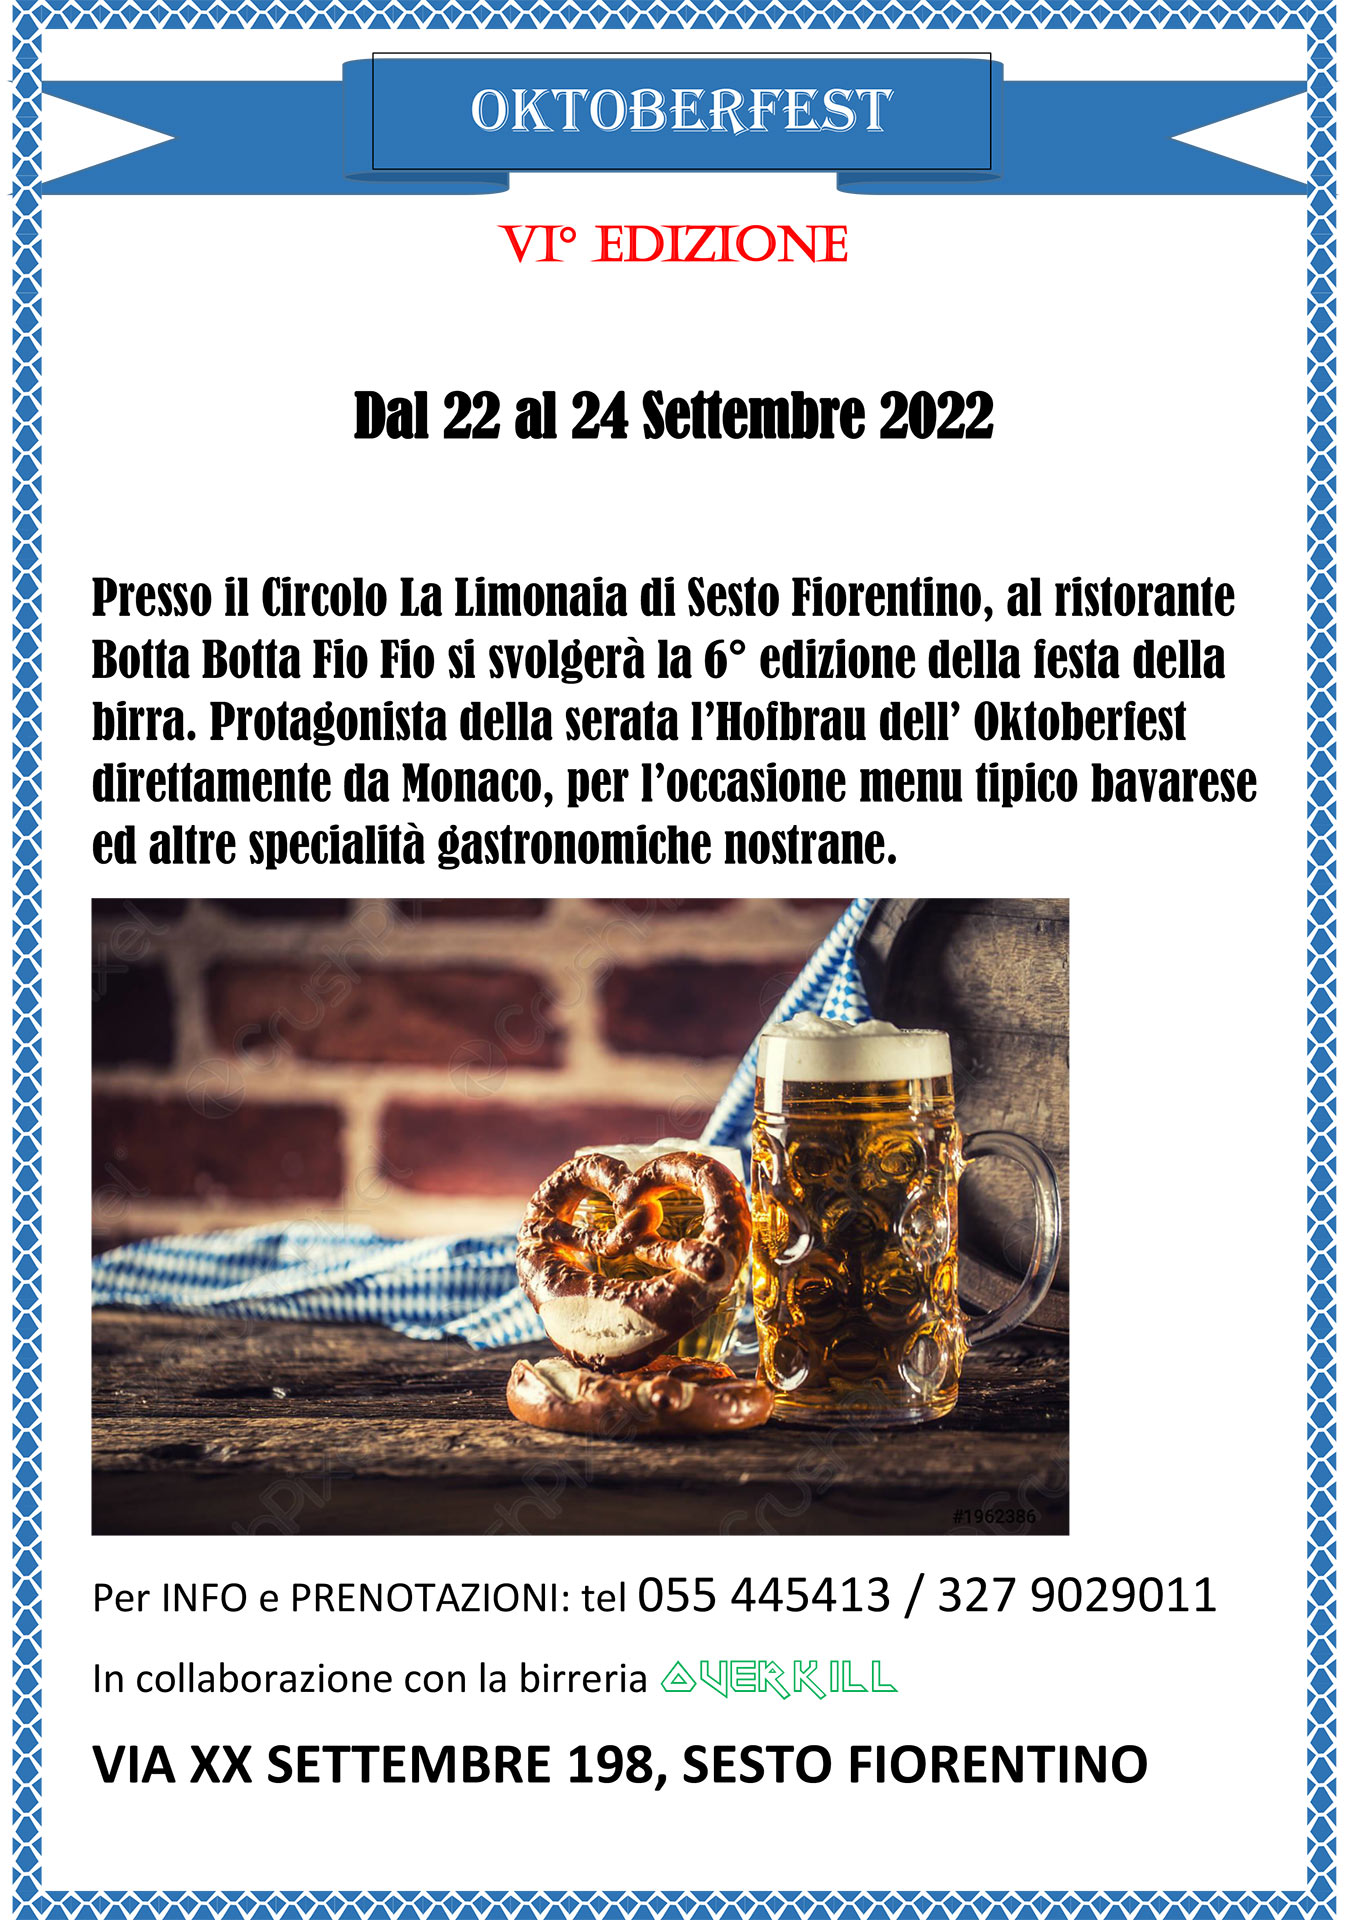 Locandina dell'Oktoberfest di Sesto Fiorentino